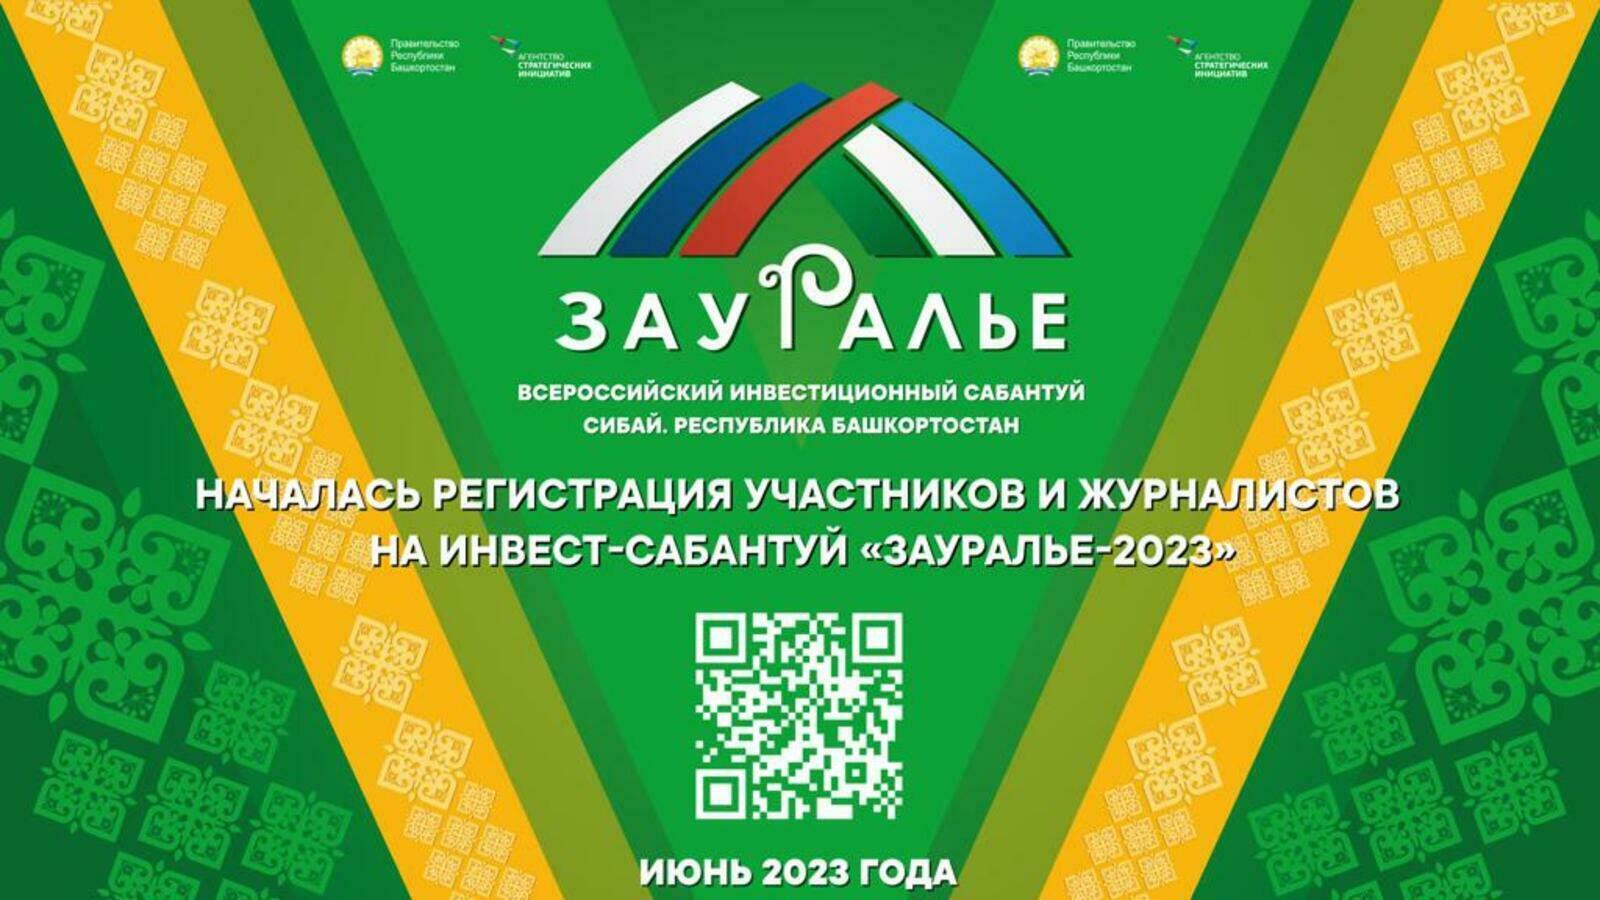 Сегодня начинает работу V Всероссийский инвестиционный сабантуй «Зауралье-2023»